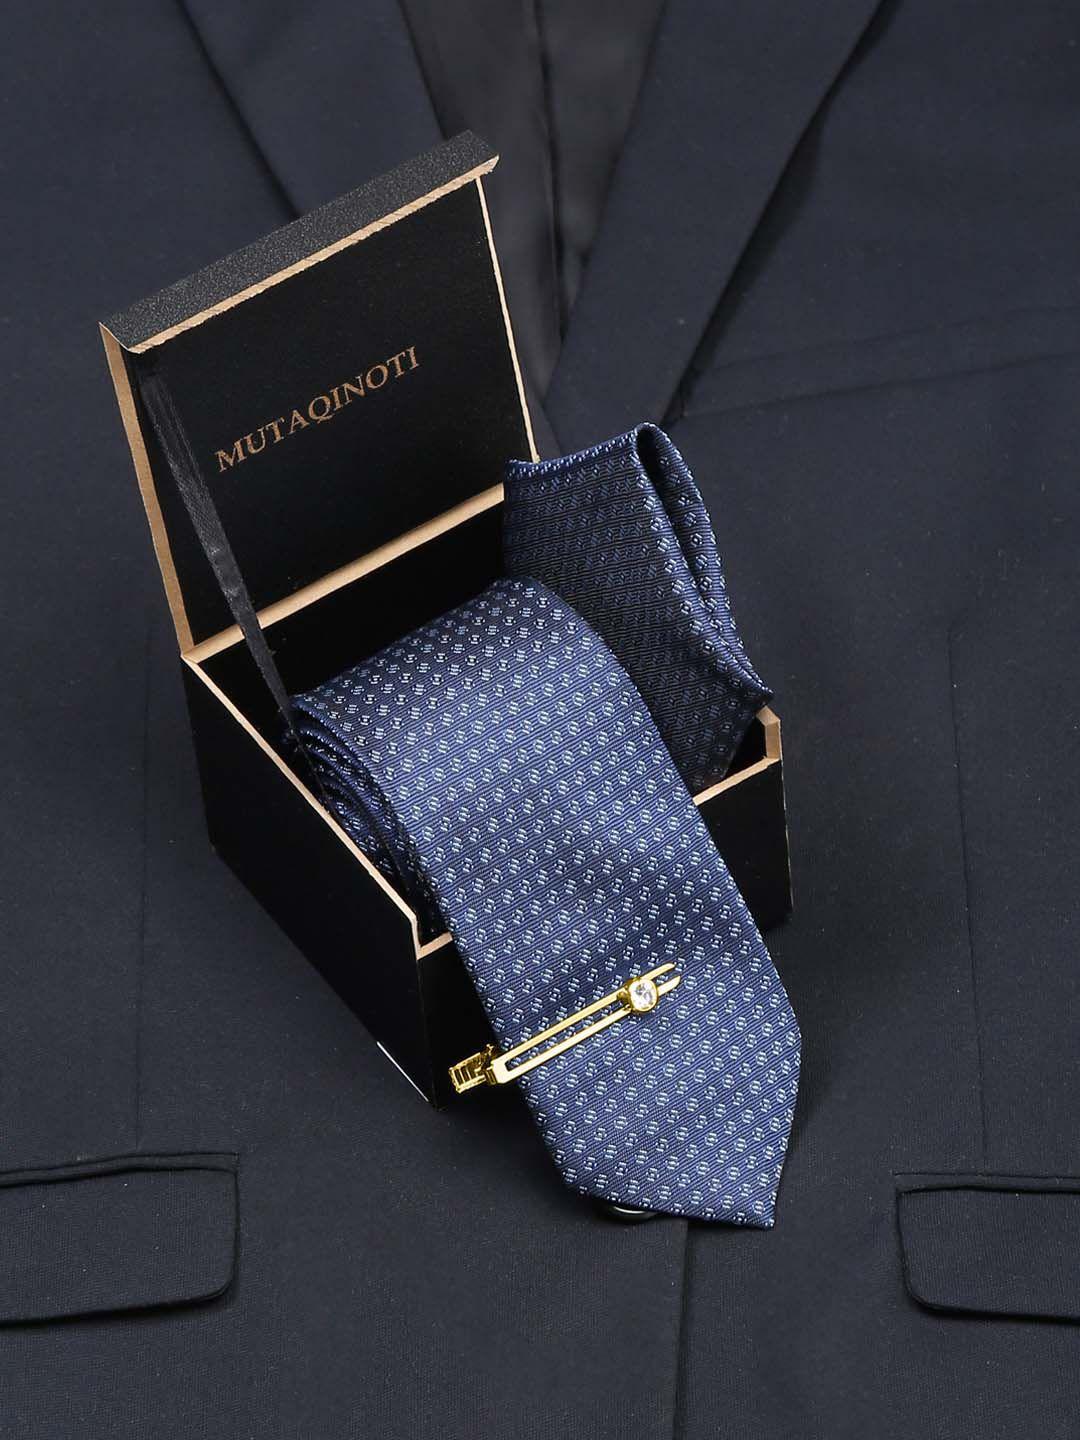 mutaqinoti men printed skinny tie with tiepin